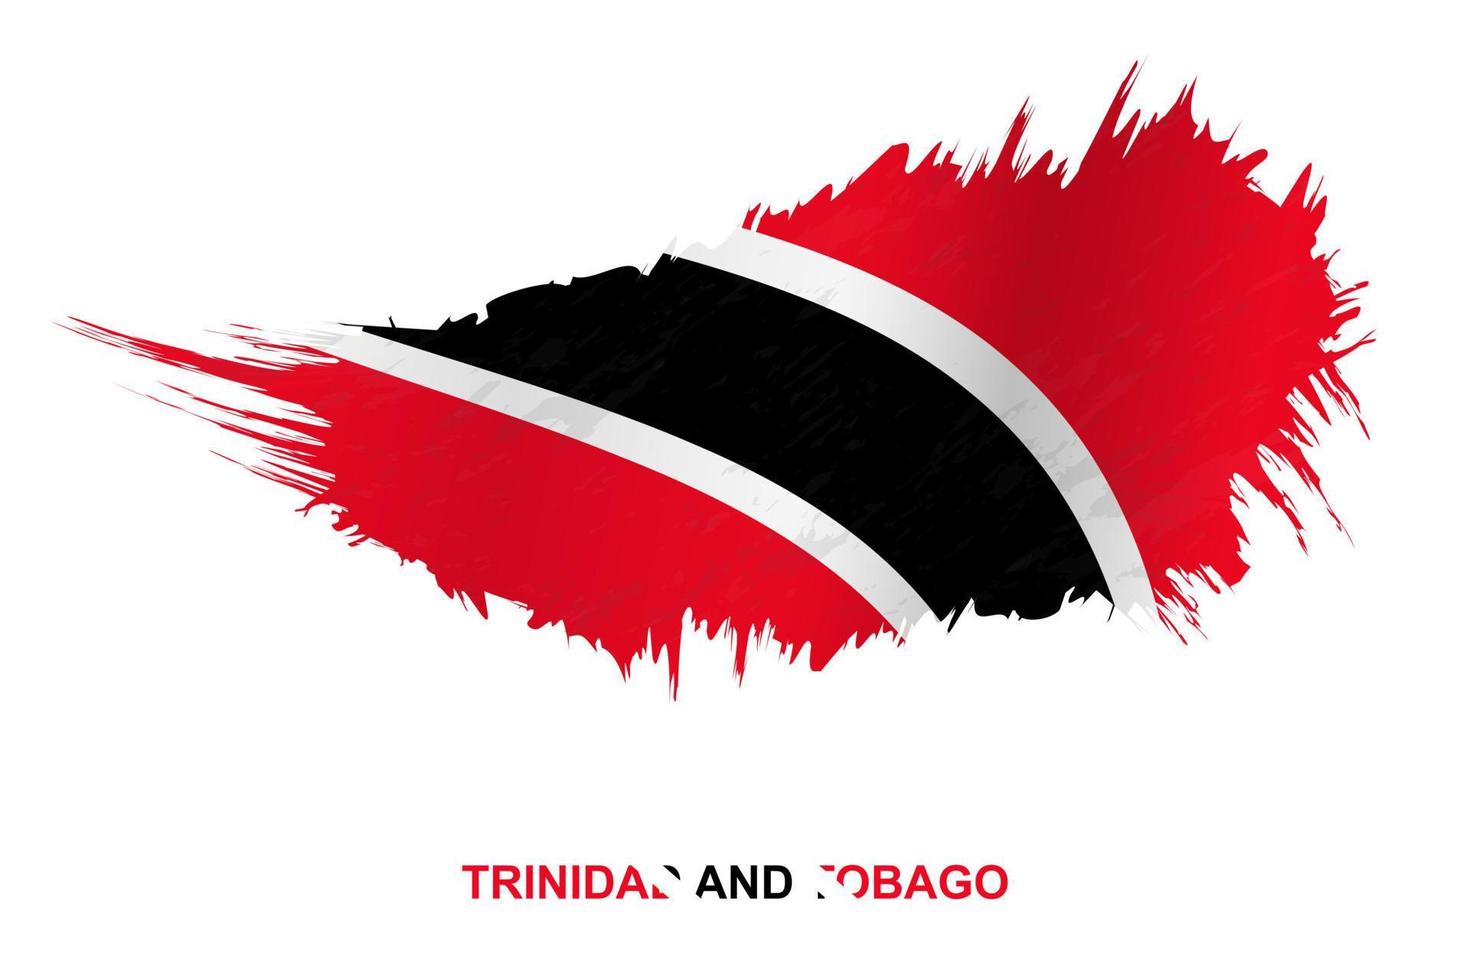 bandeira de trinidad e tobago em estilo grunge com efeito acenando. vetor